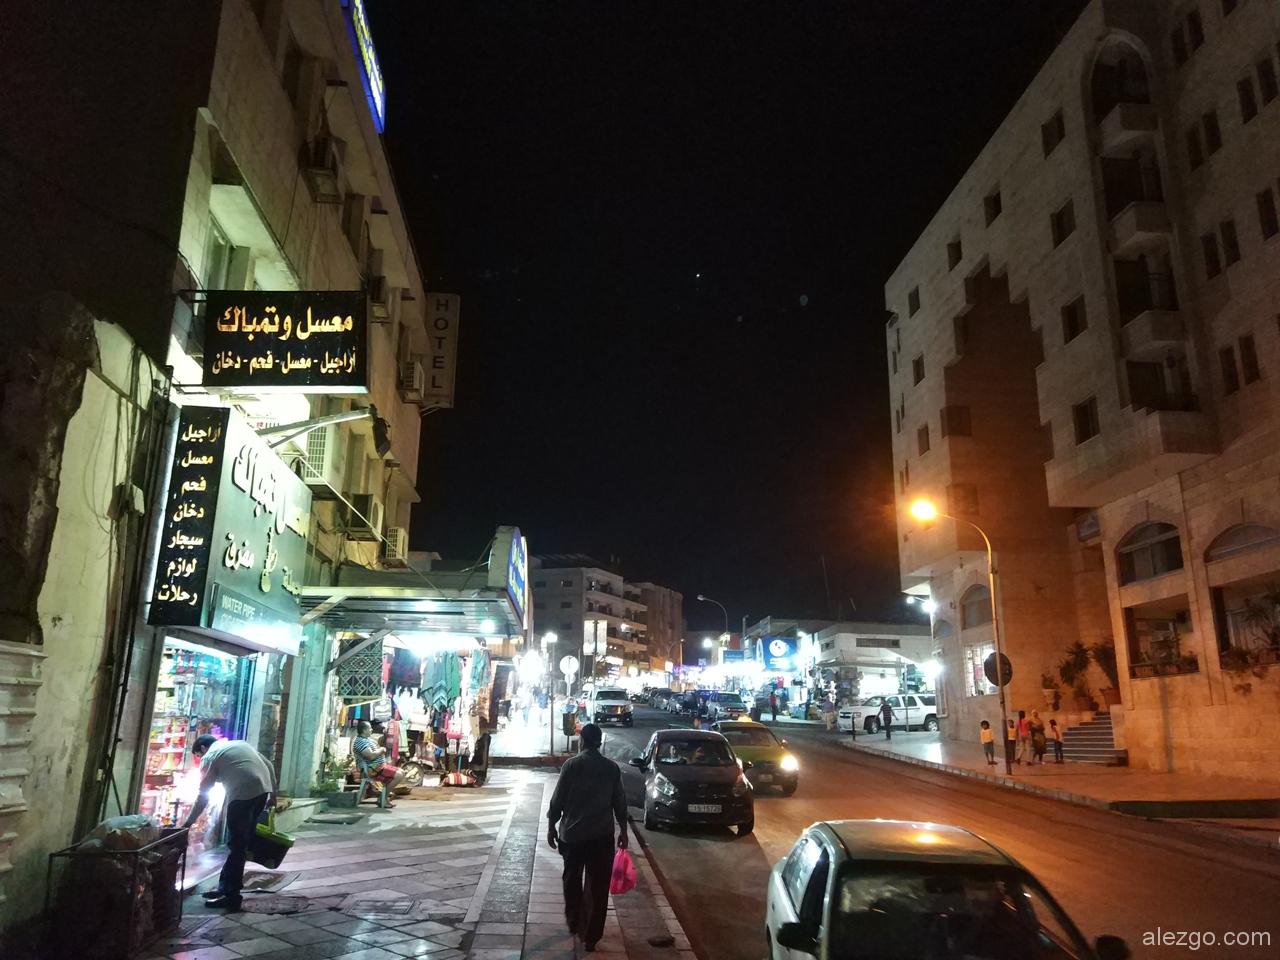 акаба, иордания, акаба иордания 2018